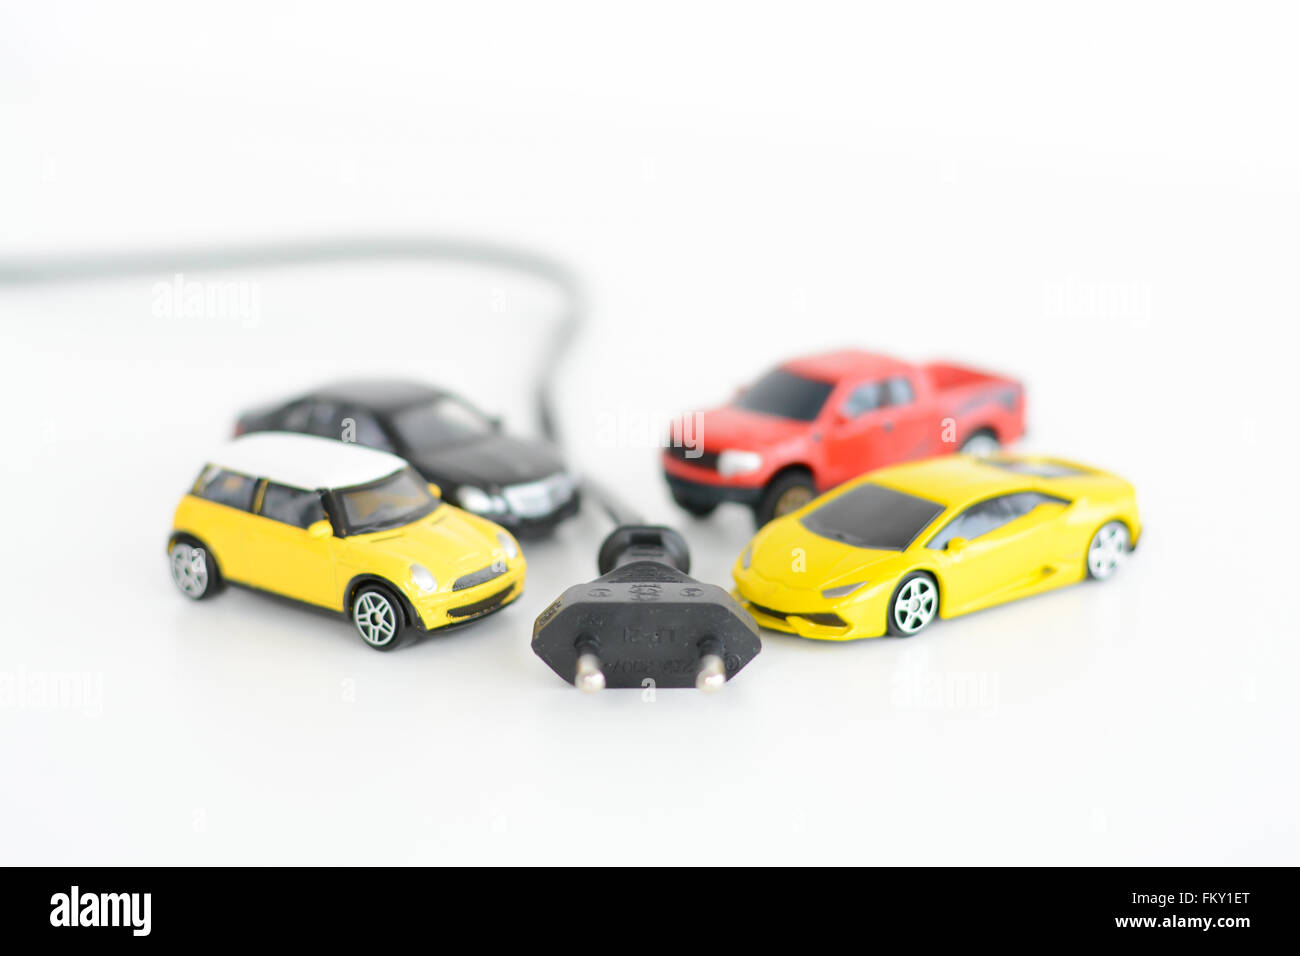 Voitures électriques concept avec de nombreux jouets véhicules sur fond blanc Banque D'Images